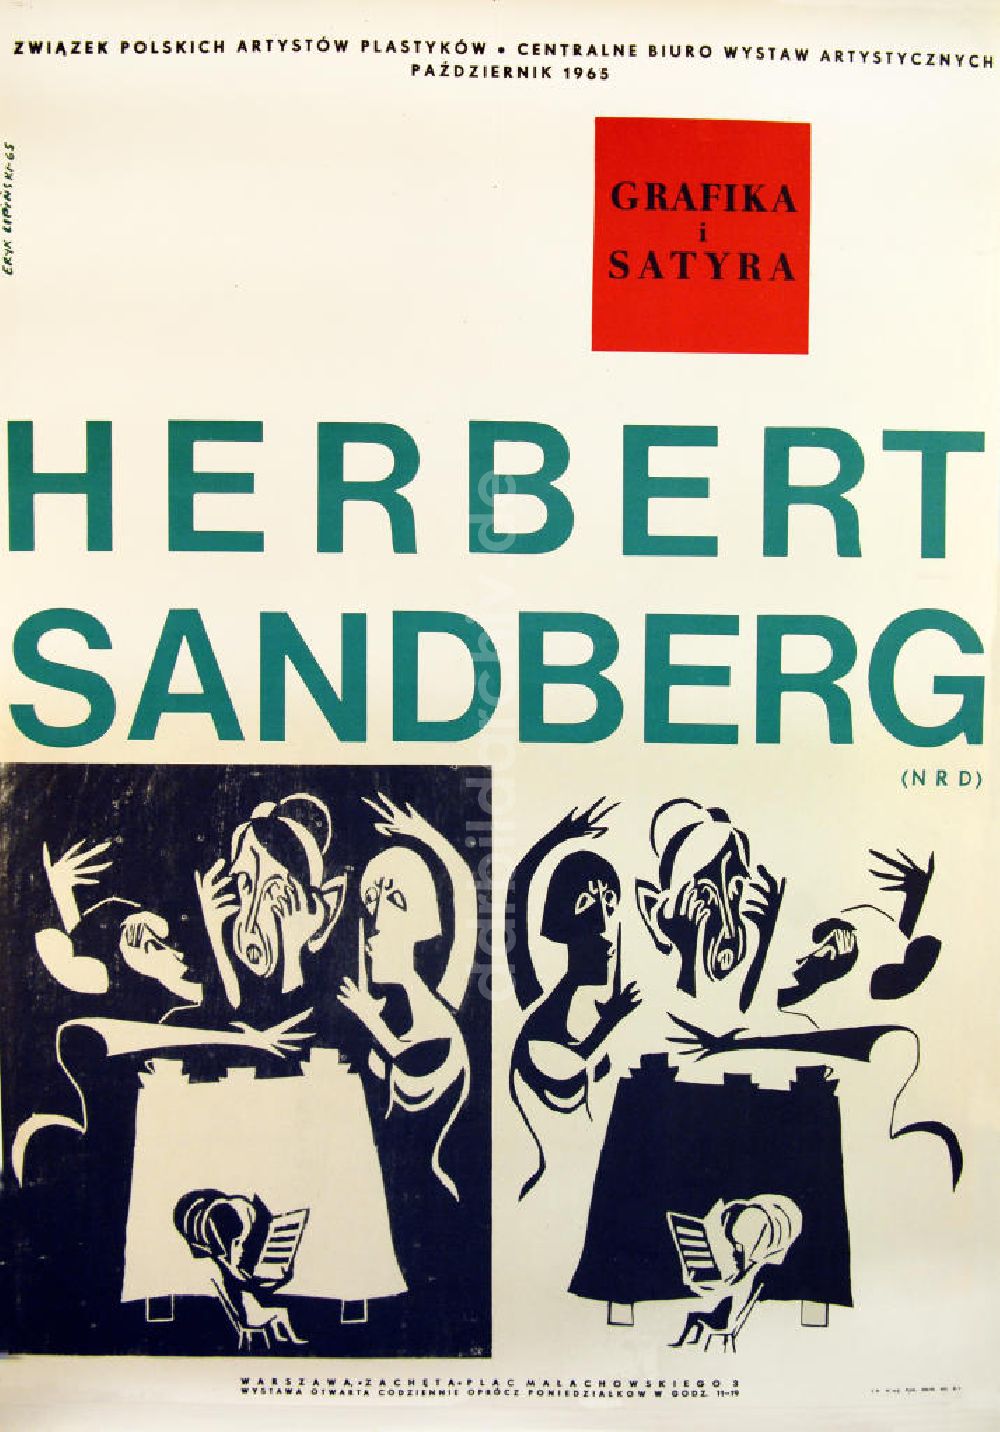 Berlin: Plakat von der Ausstellung Grafika i satyra, Herbert Sandberg (NRD) aus dem Jahr 1965